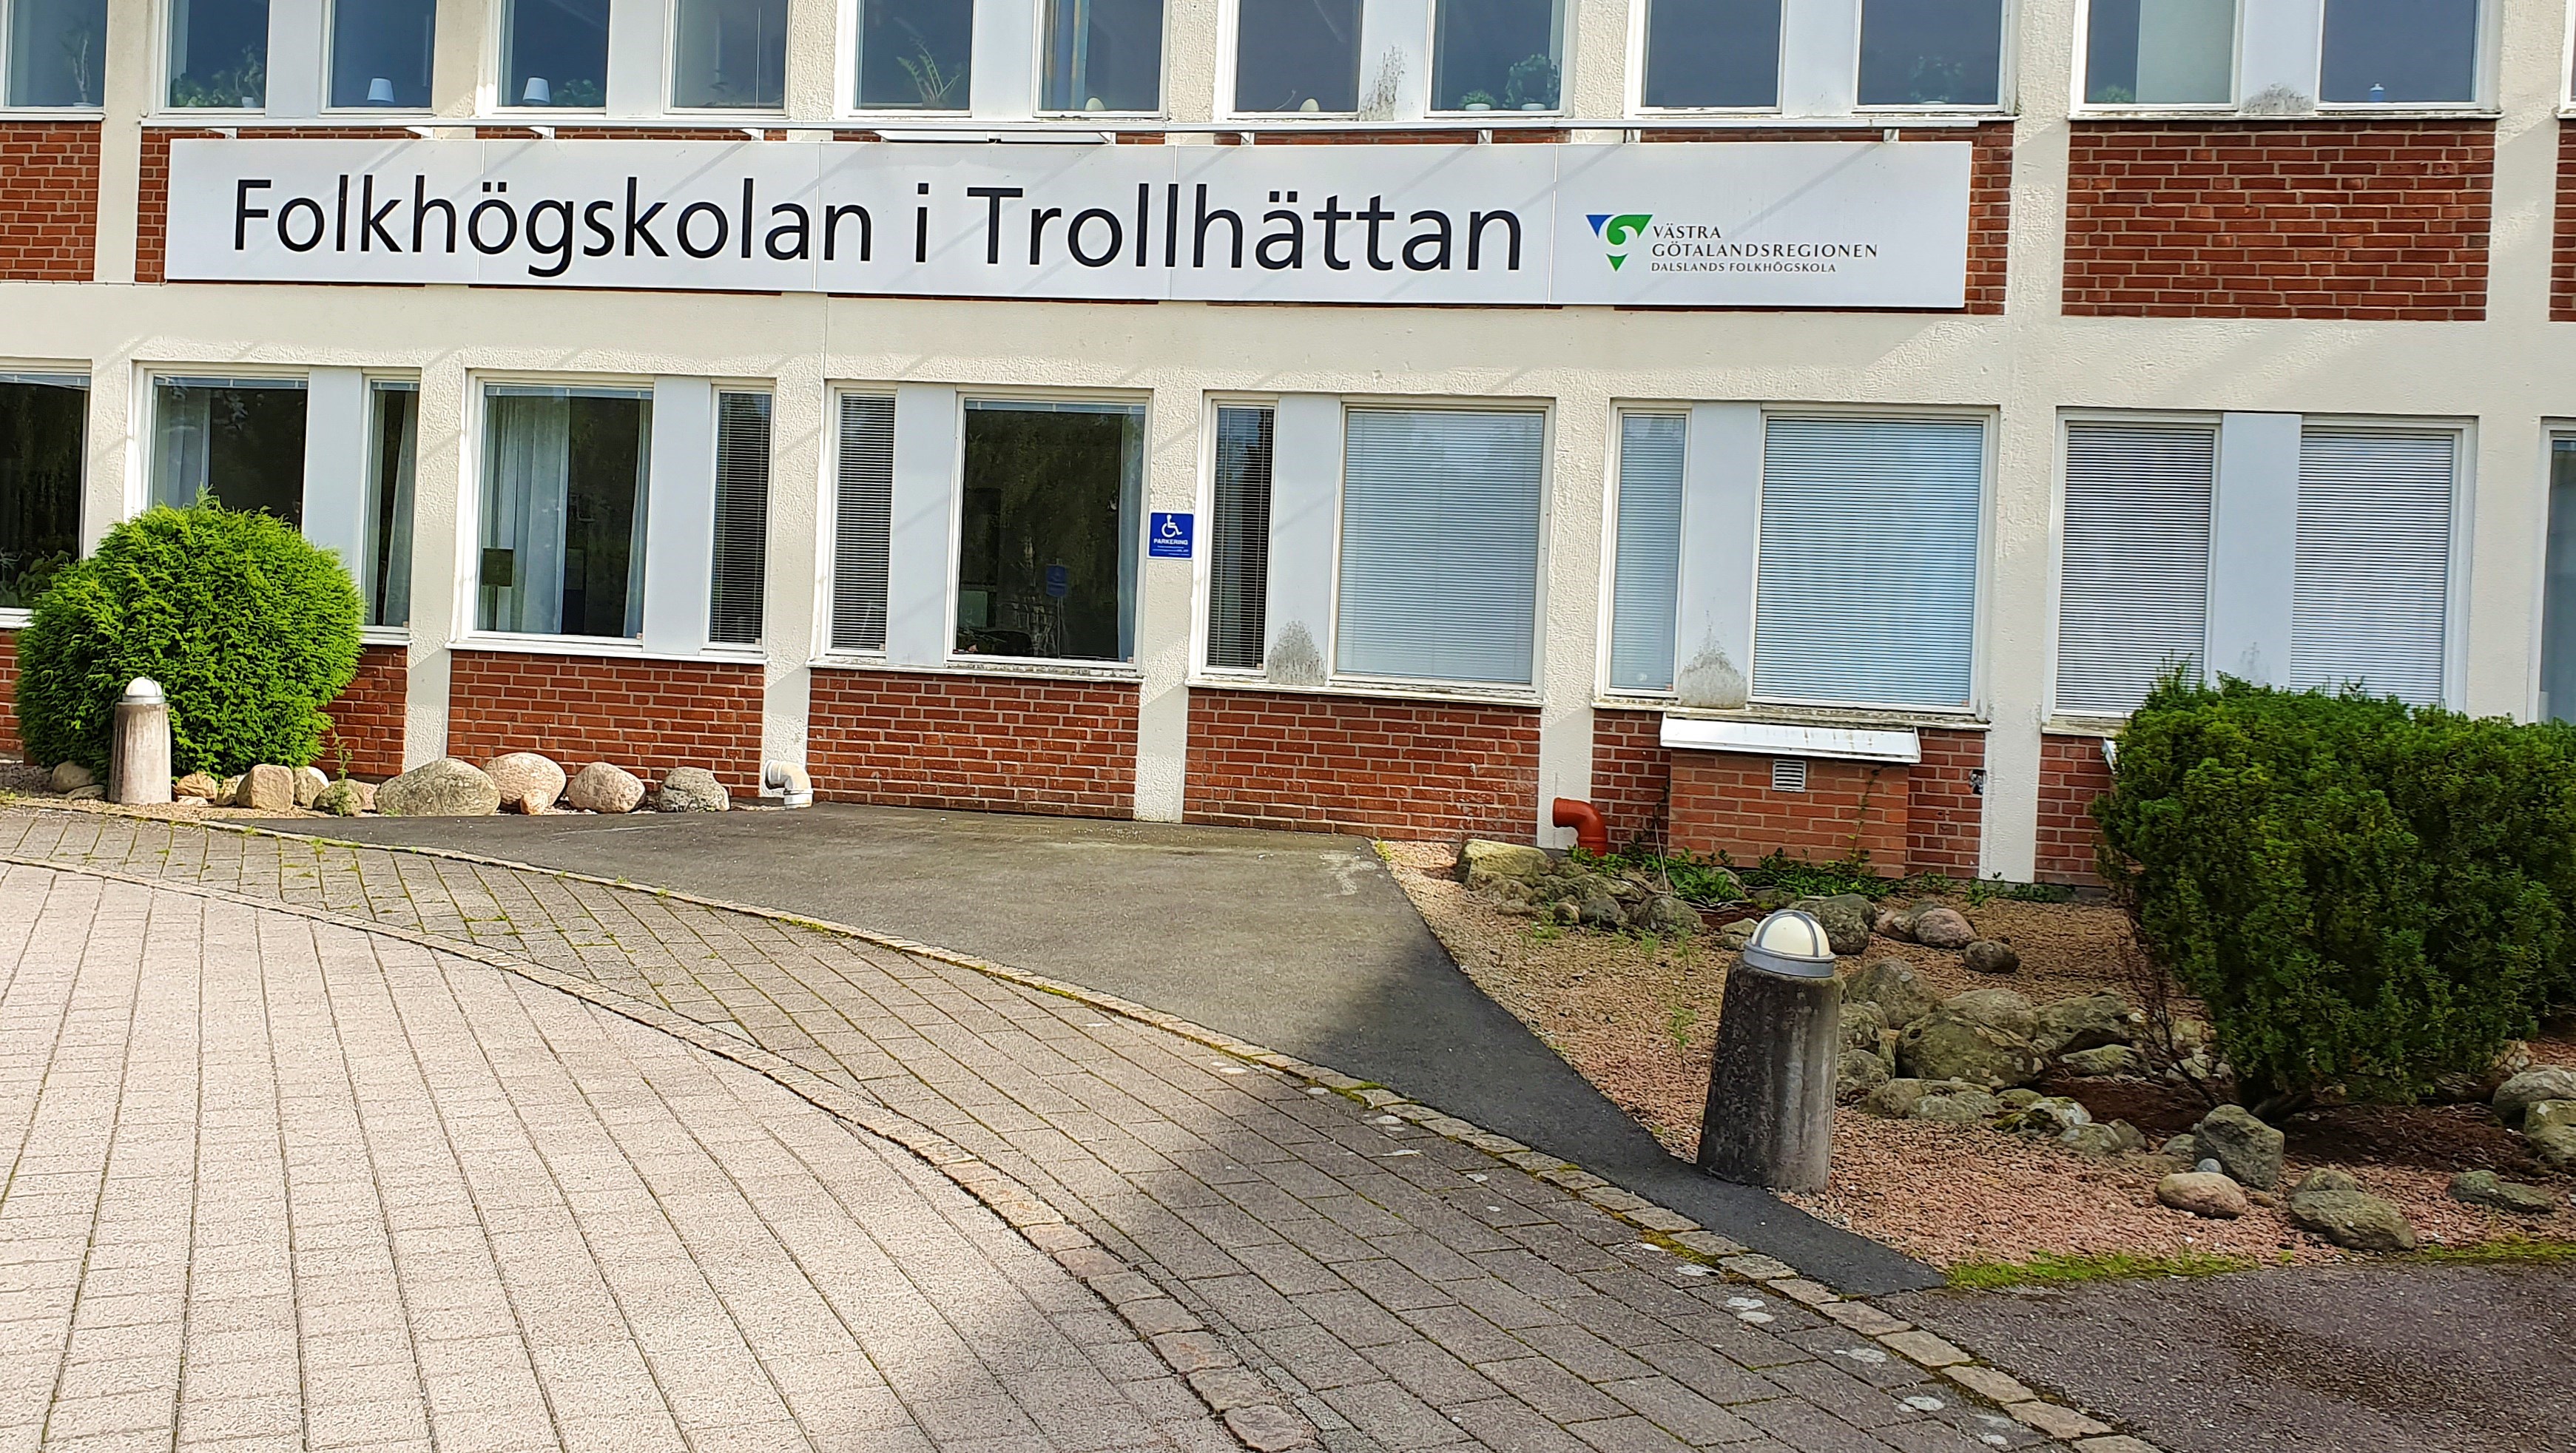 Utsidan av folkhögskolan i Trollhättan. Det är en gammal sjukhusbyggnad i tegel. På huset hänger en skylt där det står Folkhögskolan i Trollhättan.